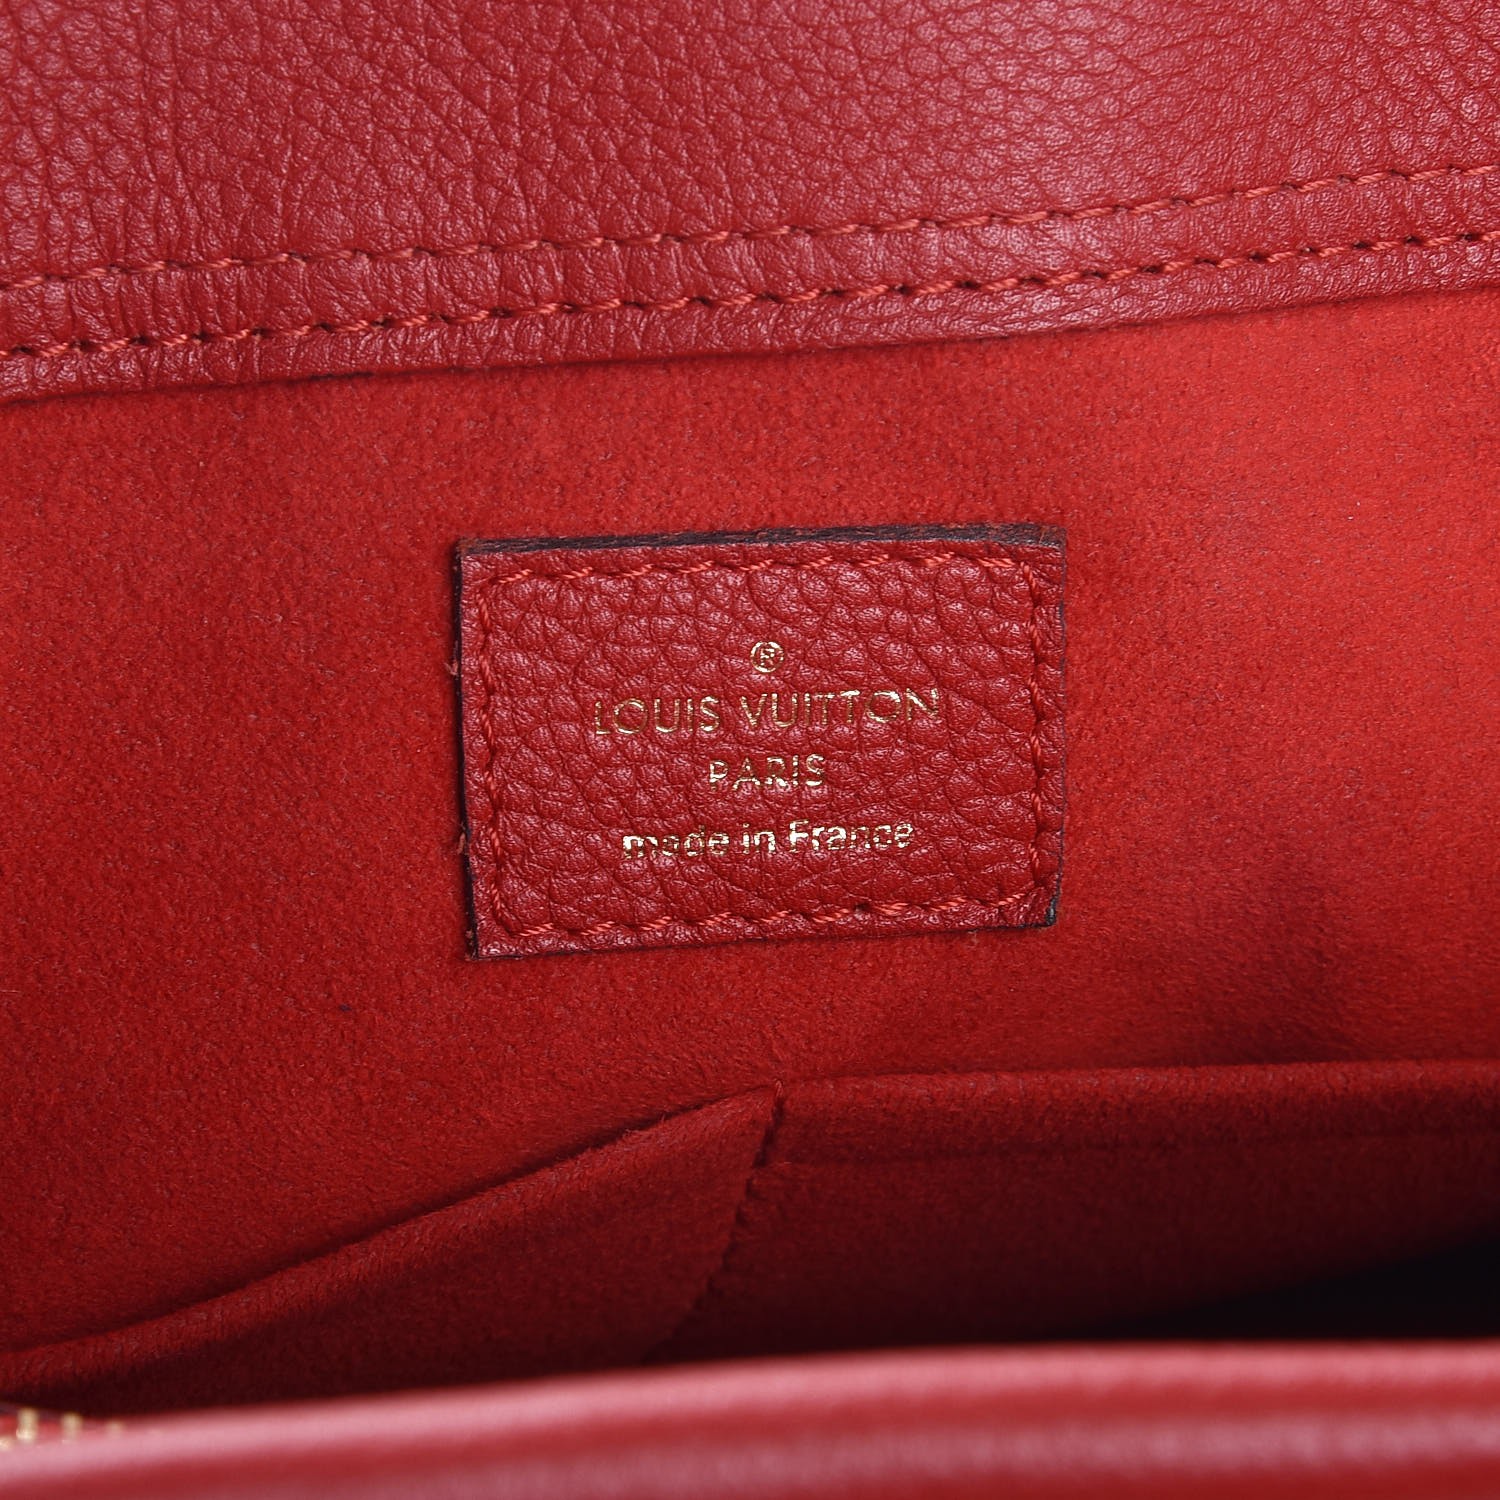 Louis Vuitton Nano Pallas Nano bag Review & what fits in 